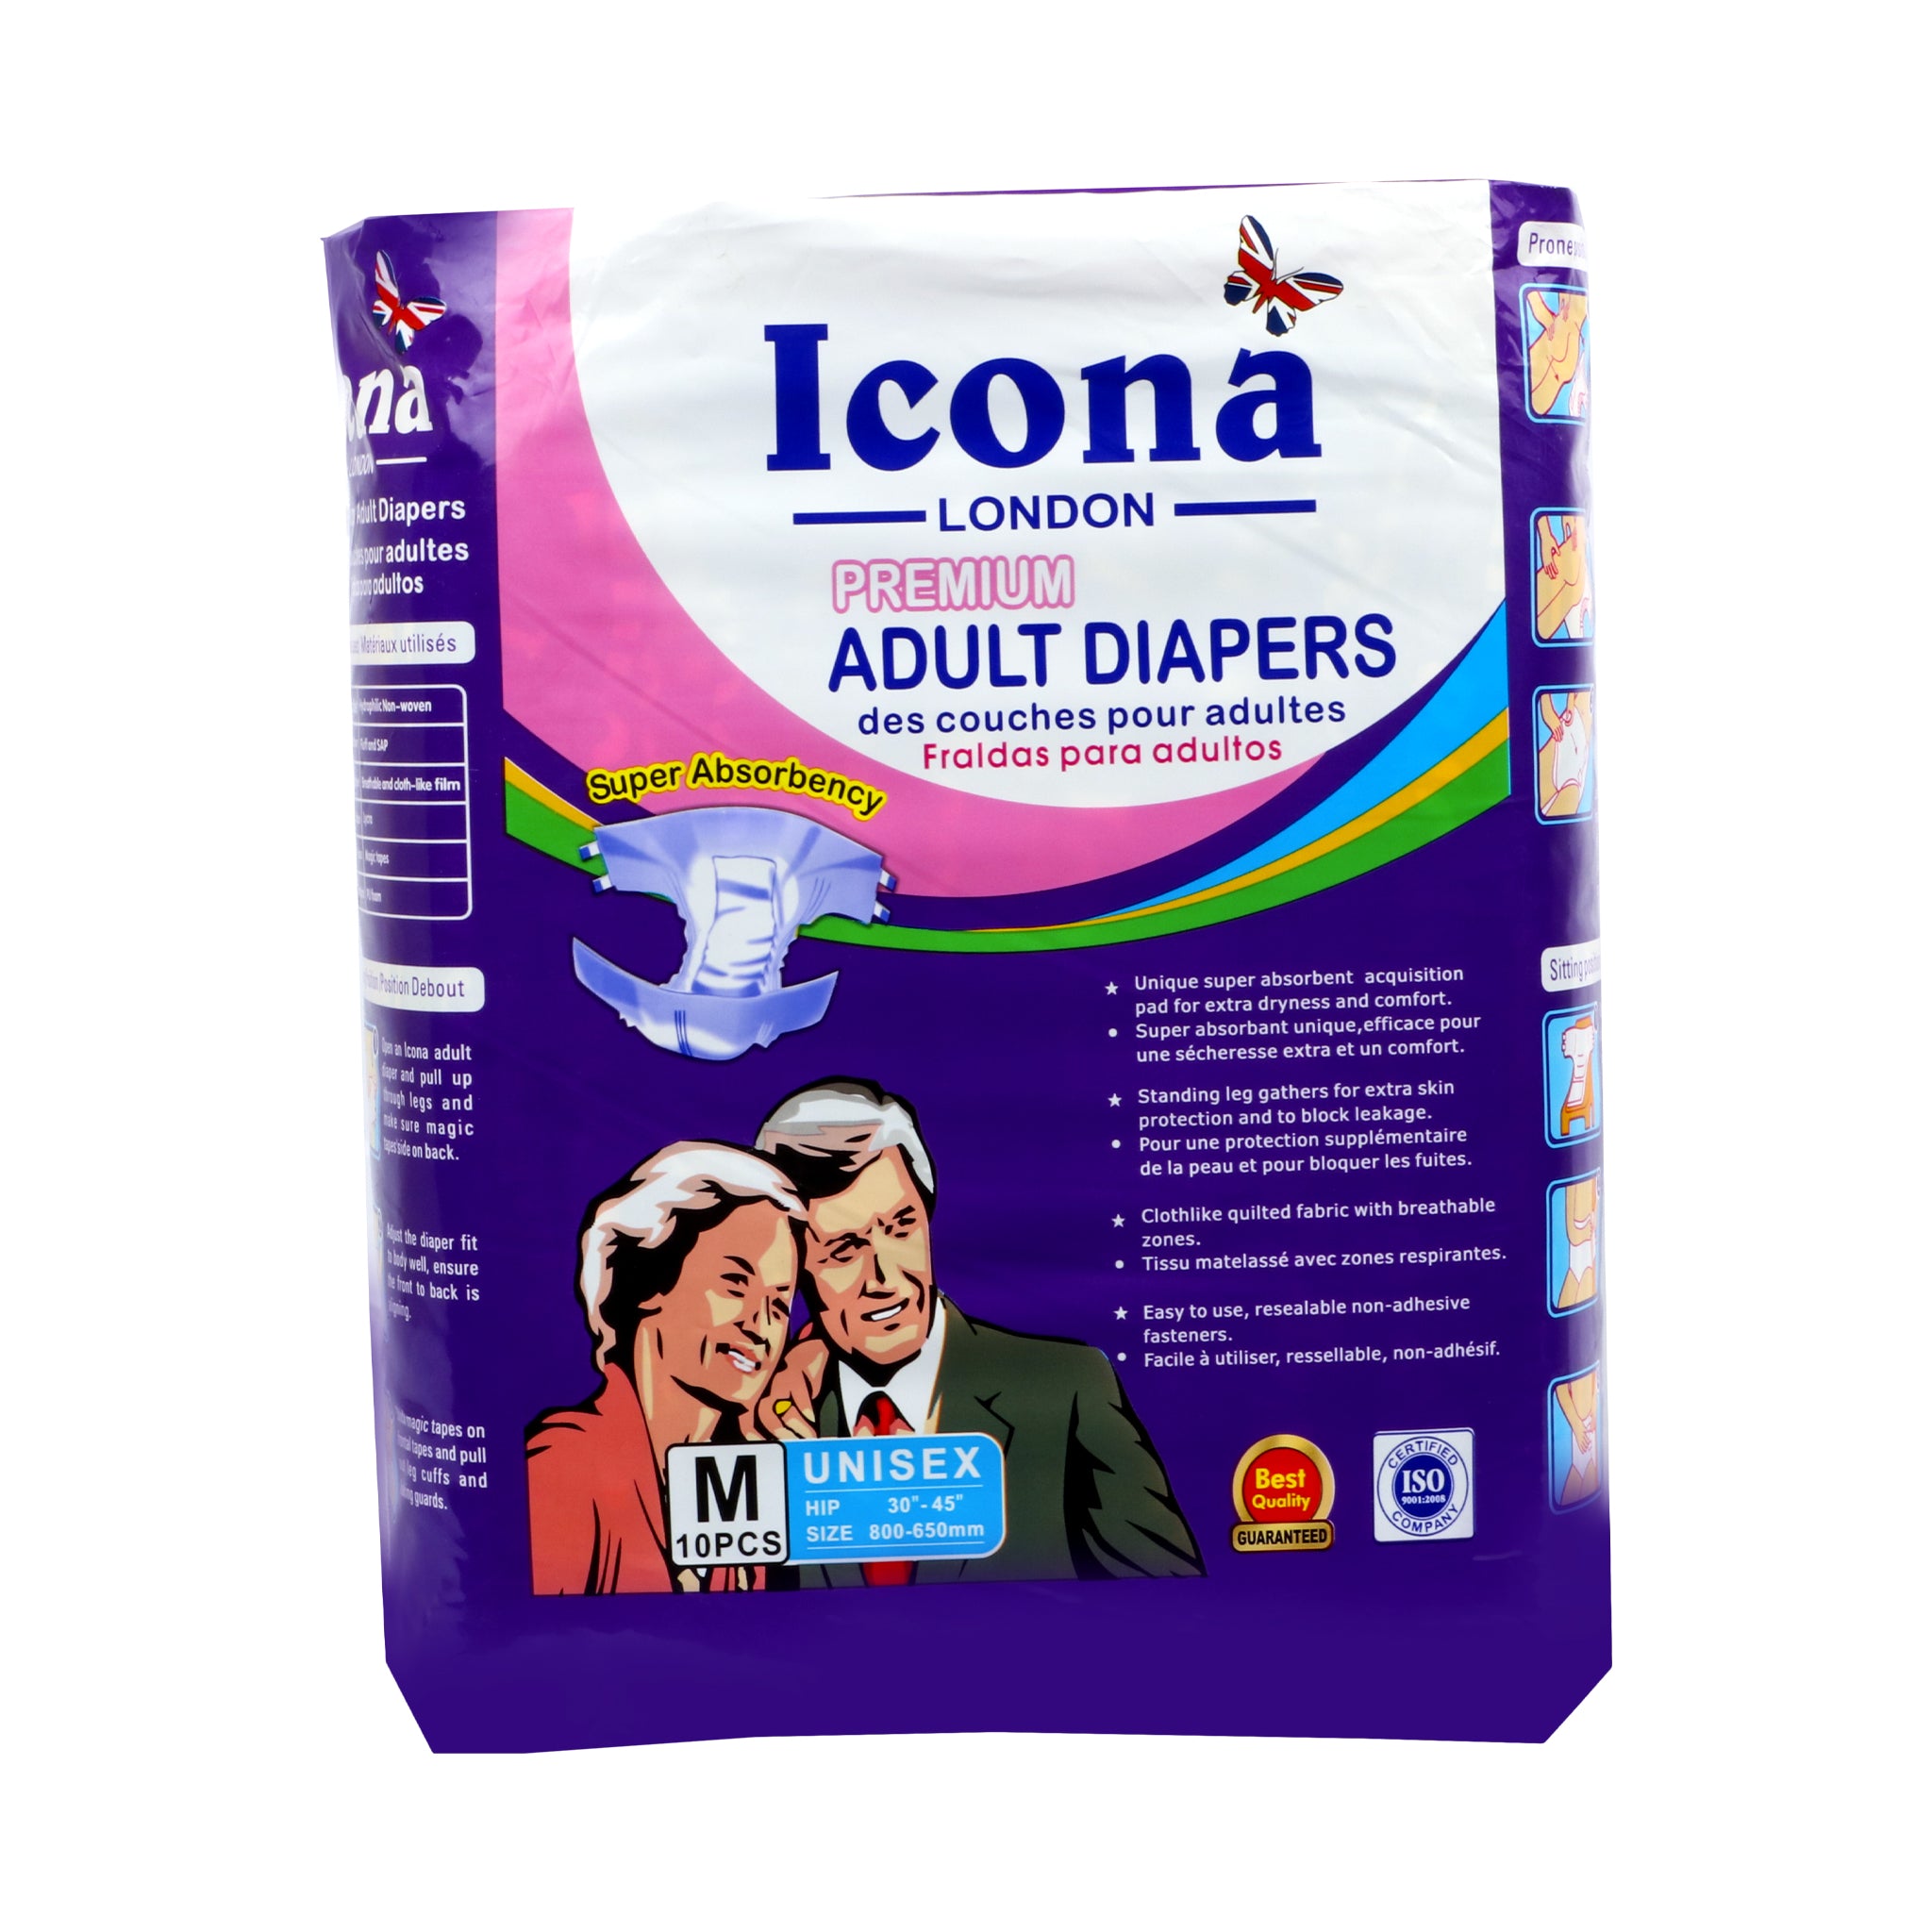 Icona London Adult Diaper Premium (m)